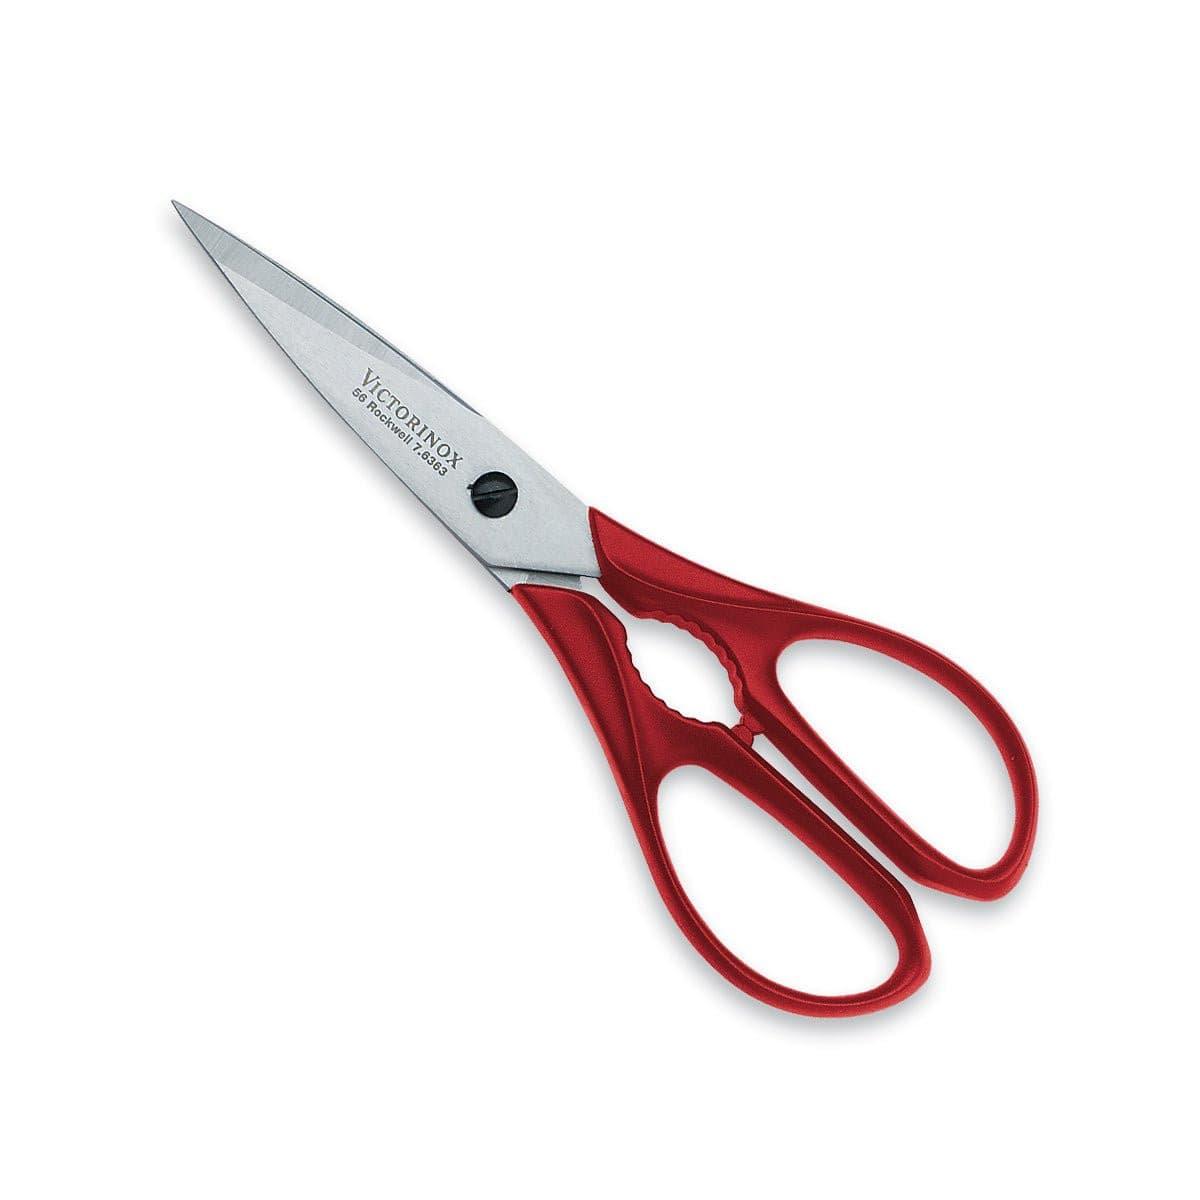 Victorinox Kitchen Scissors - Black/Red